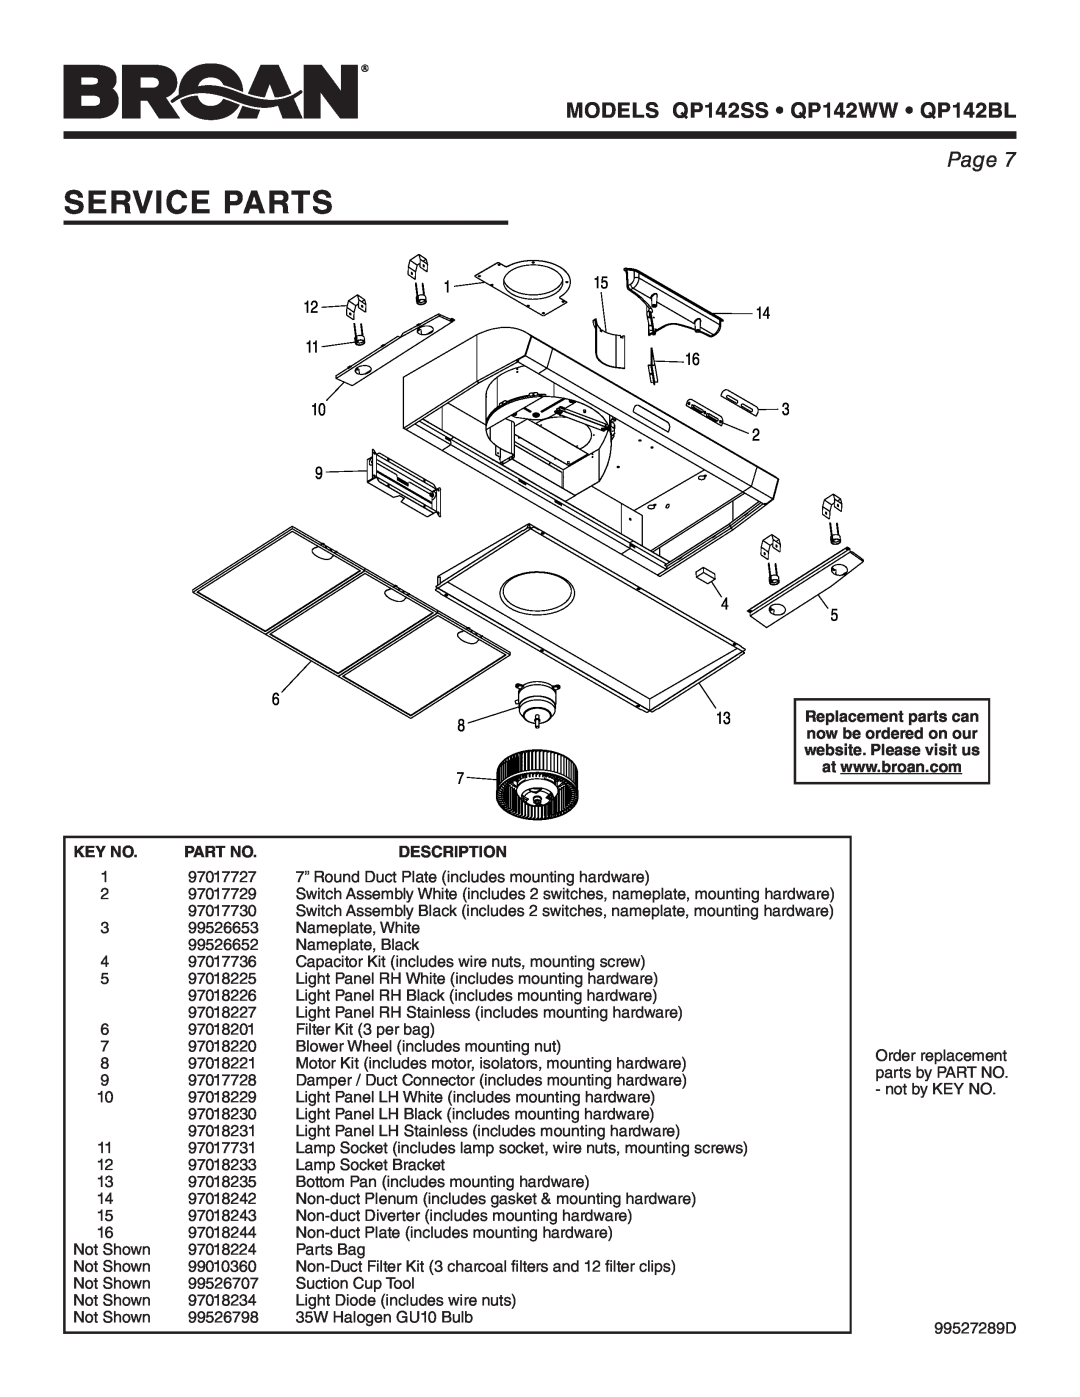 Broan manual Service Parts, Description, MODELS QP142SS QP142WW QP142BL, Page 